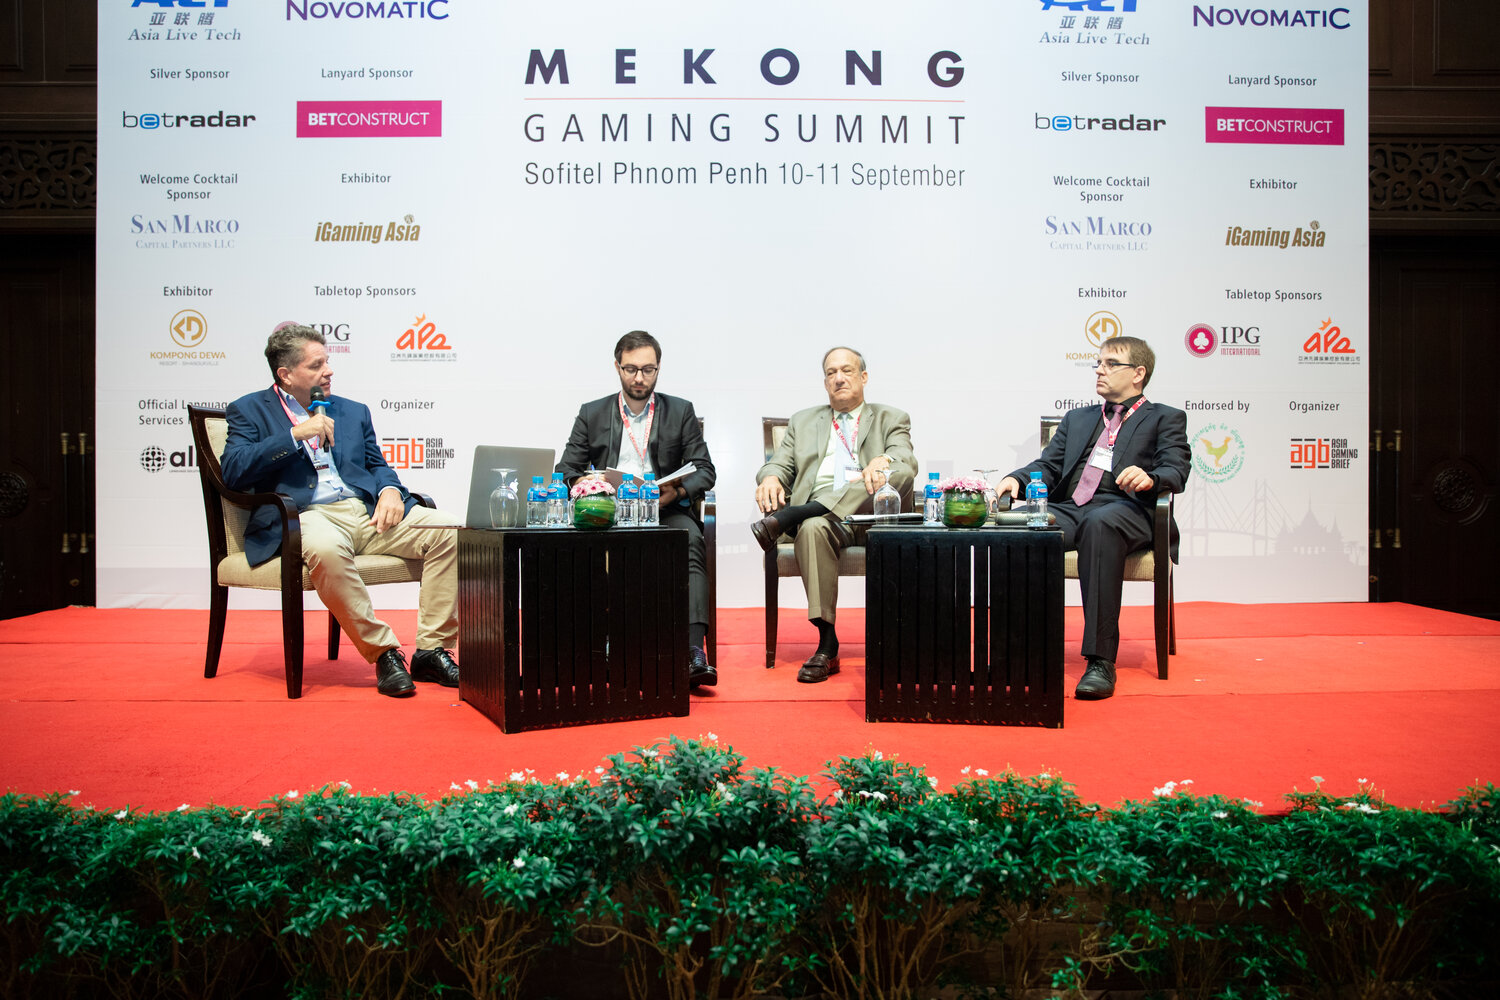 Mekong Gaming Summit 2019